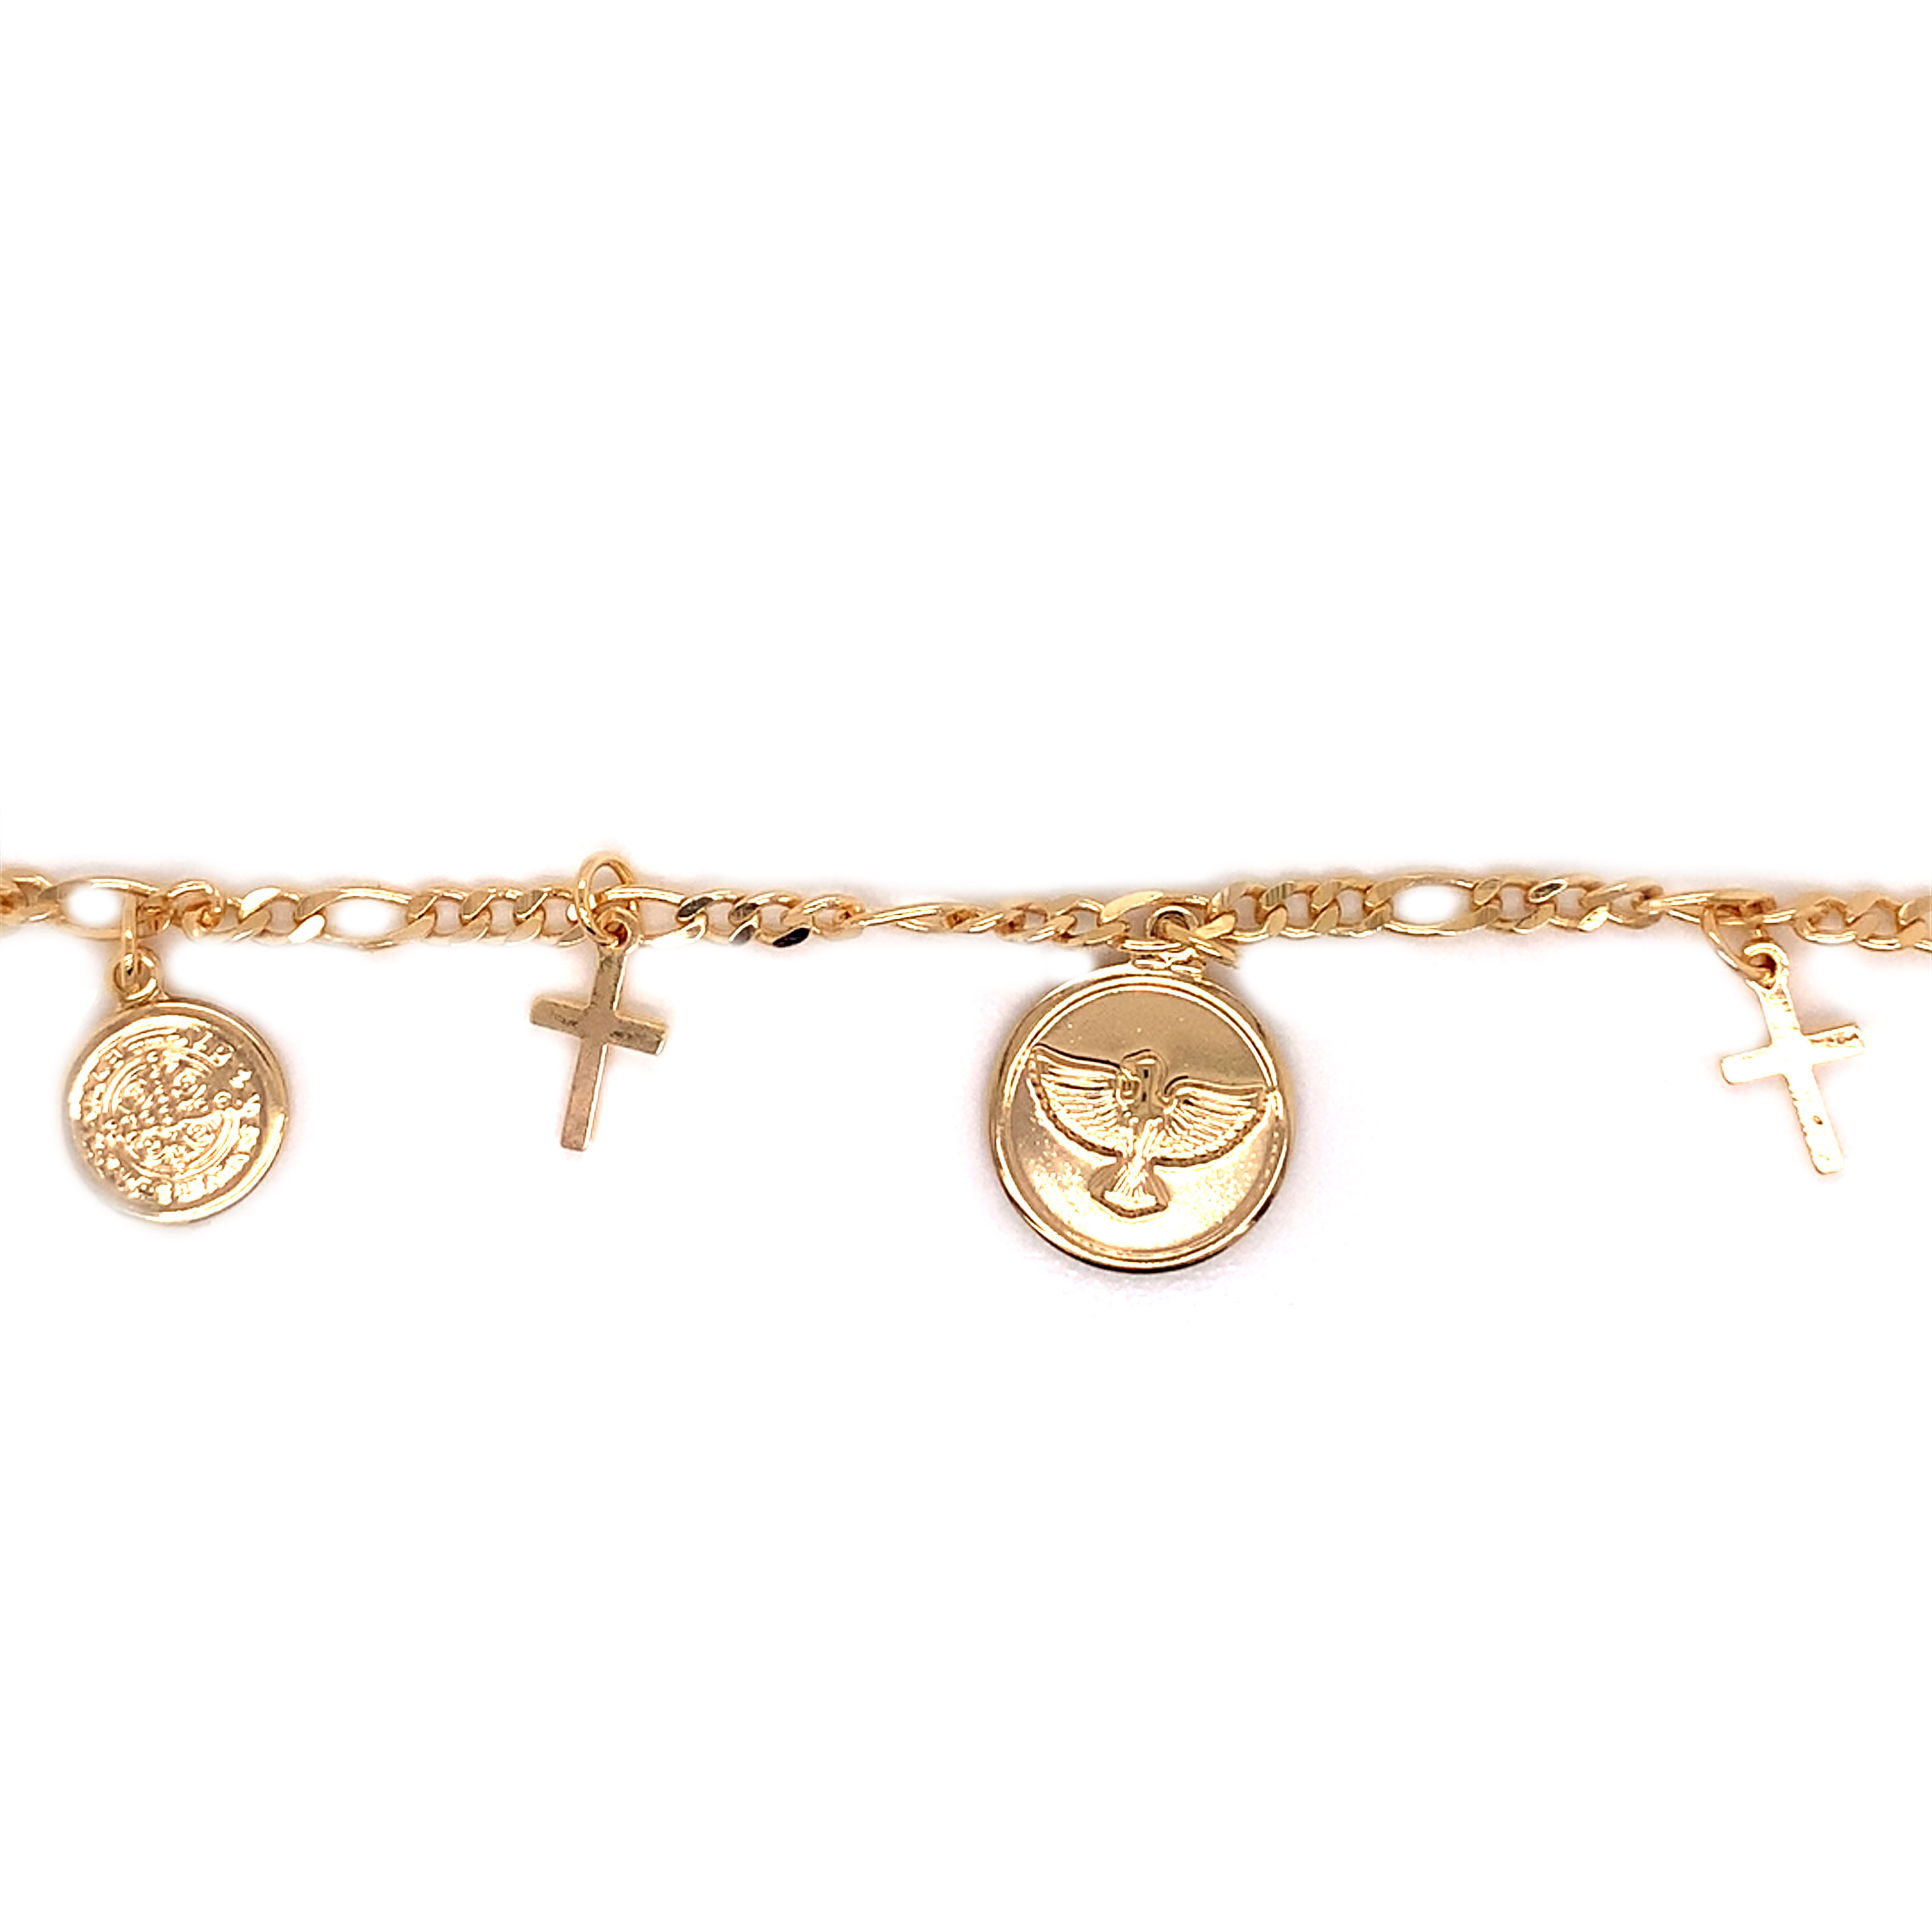 Religious Charm Bracelet - Gold Filled